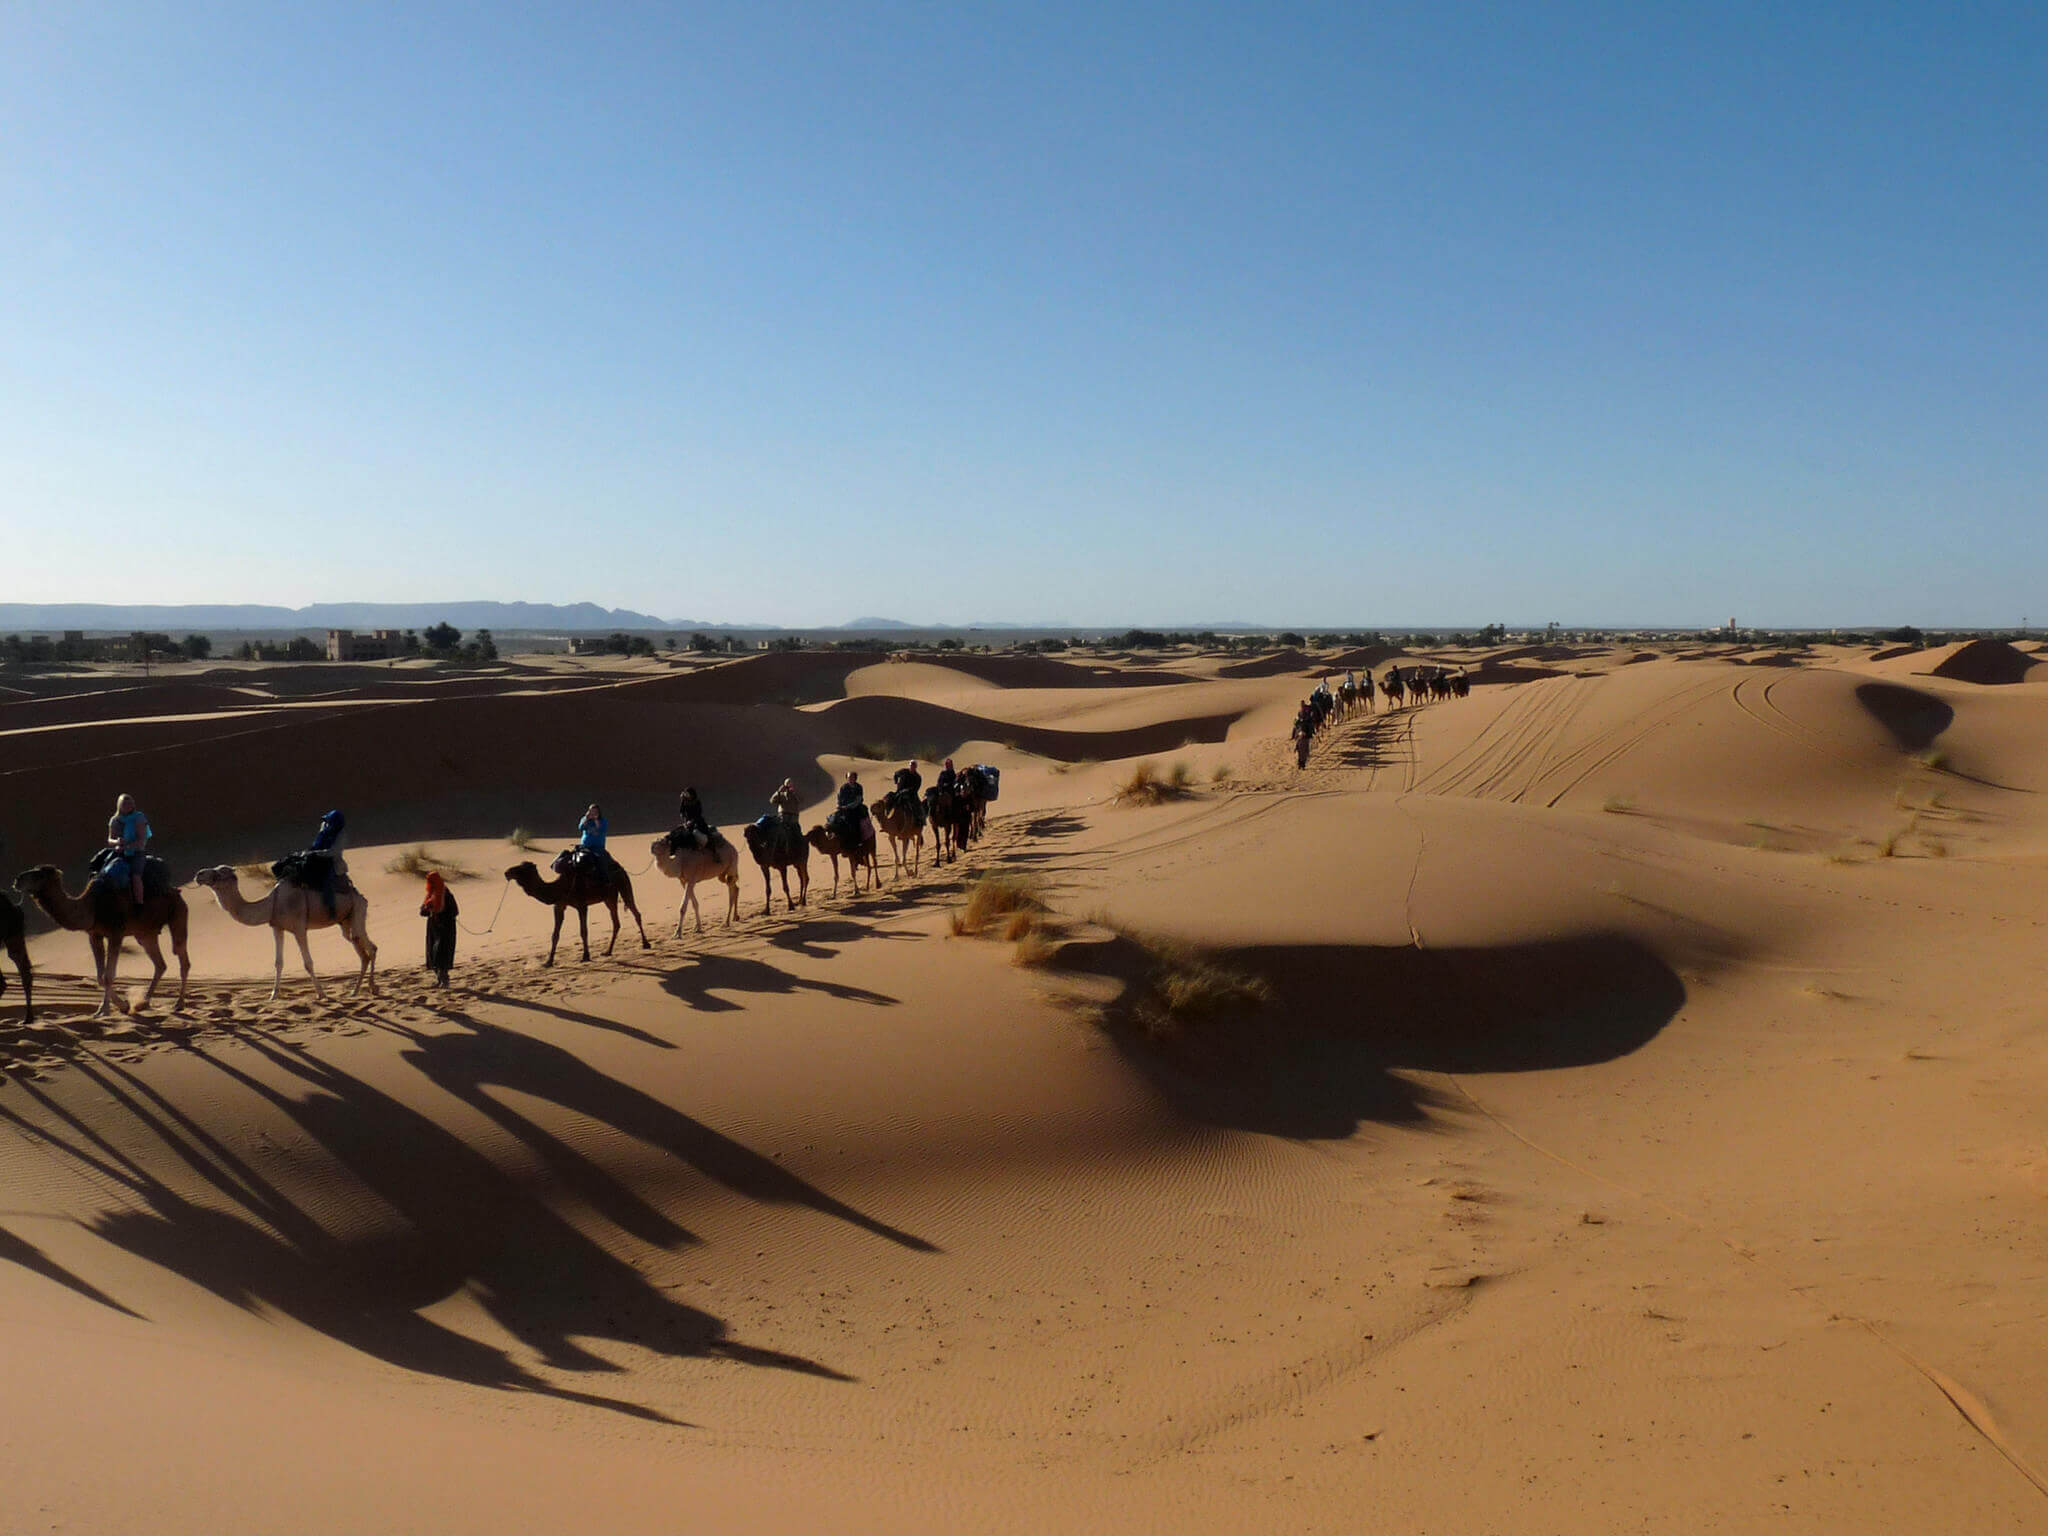 3 days tour from Marrakech to Merzouga desert